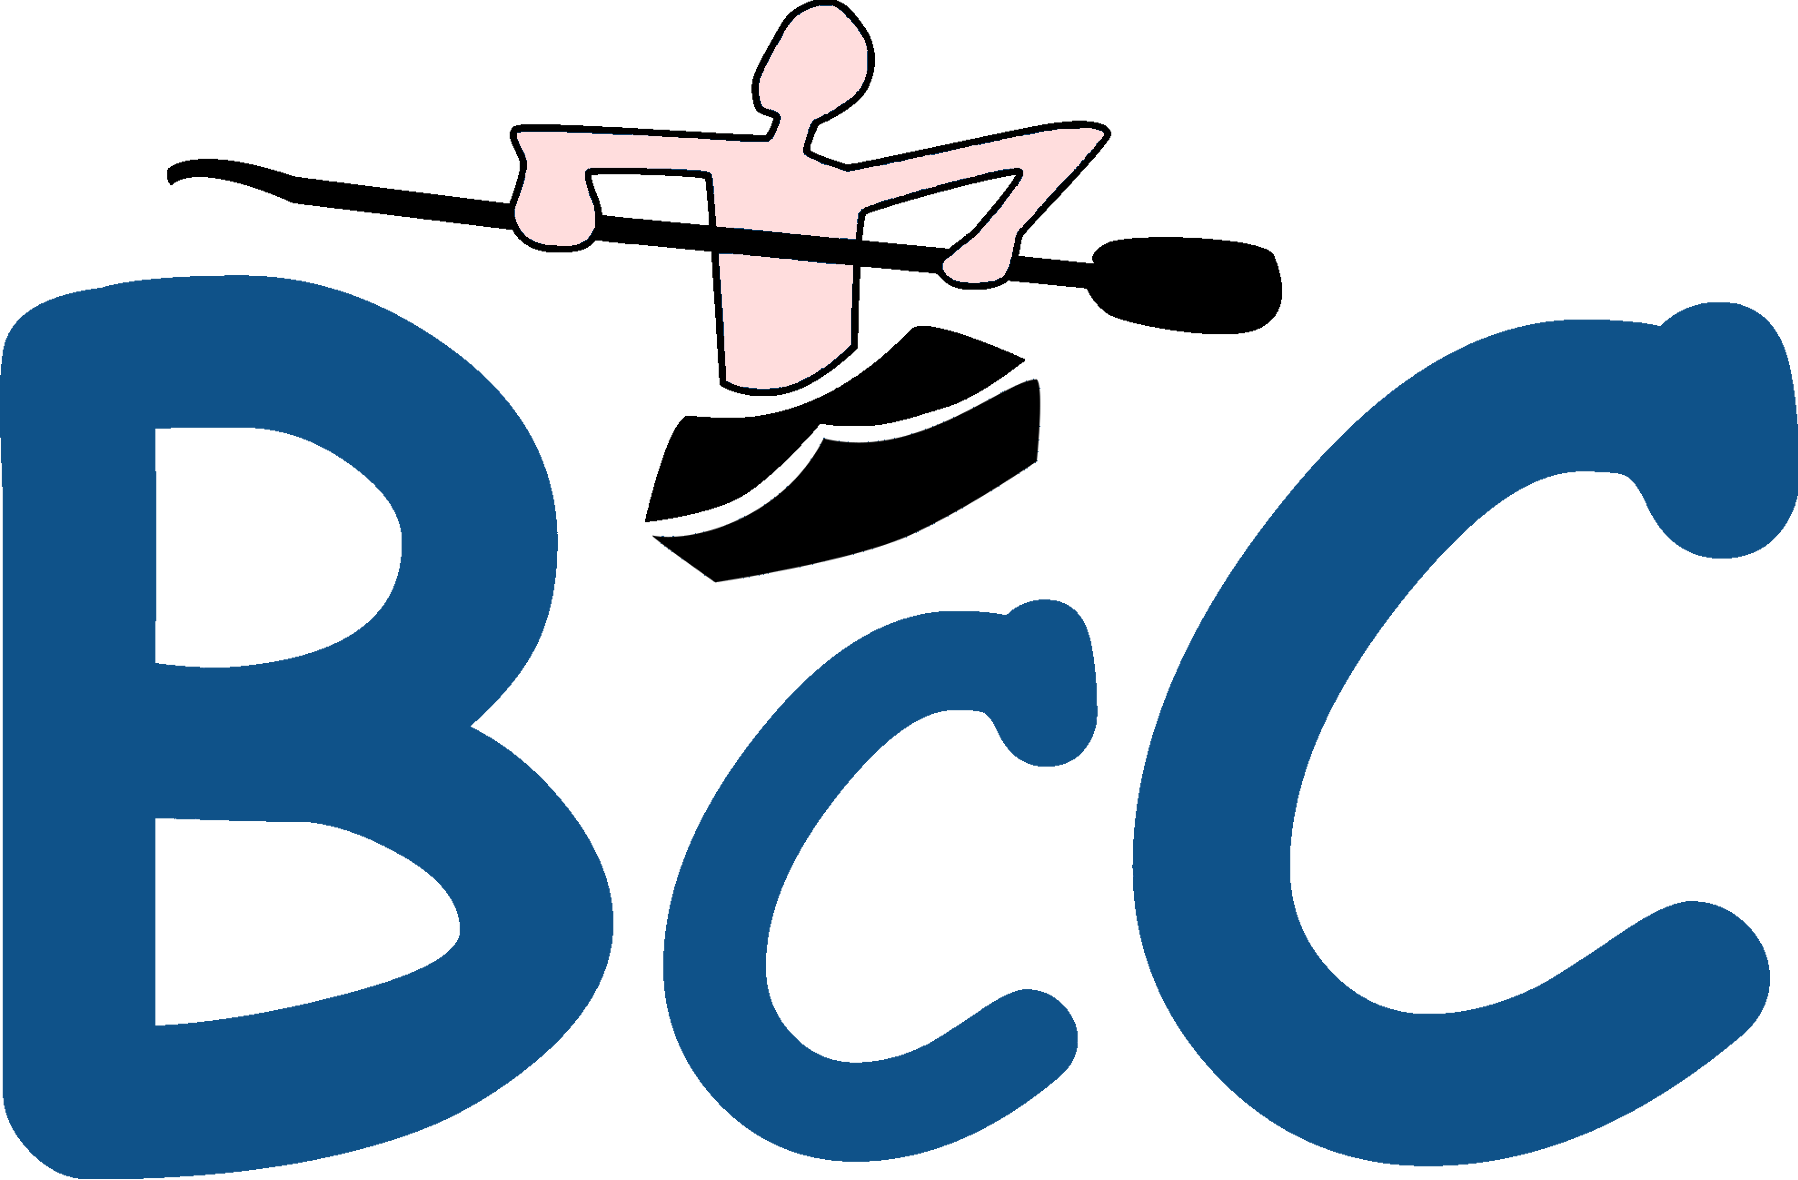 Bromley Canoe Club - Bromley Canoe Club (1798x1180)